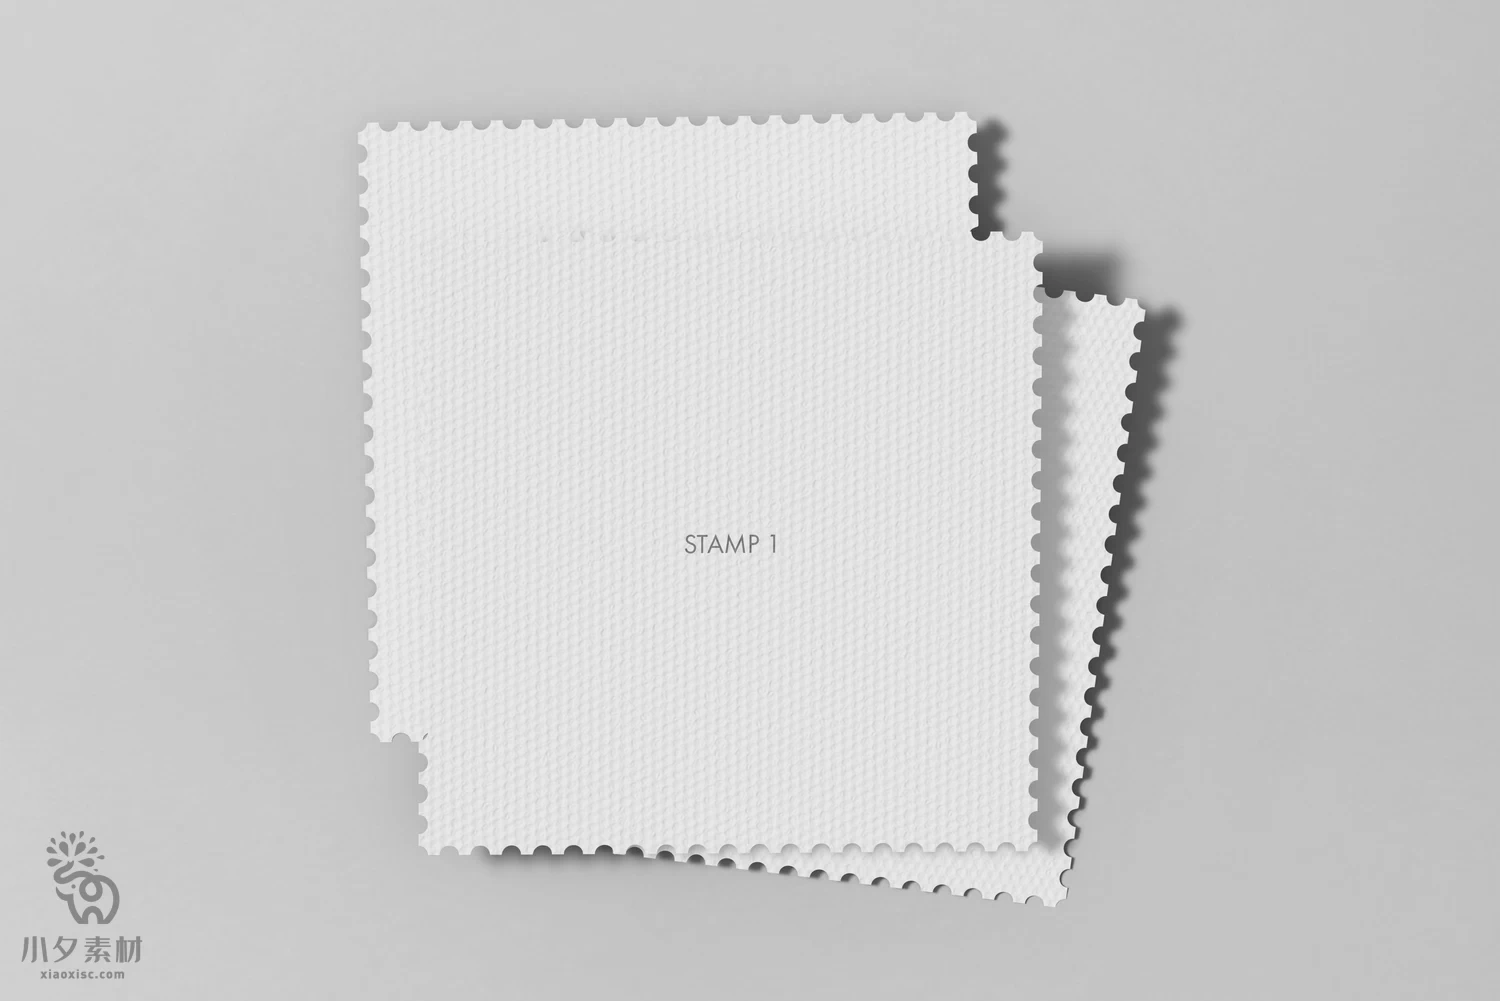 正方形邮票优惠券卡卷智能贴图样机模板PSD分层设计素材【004】